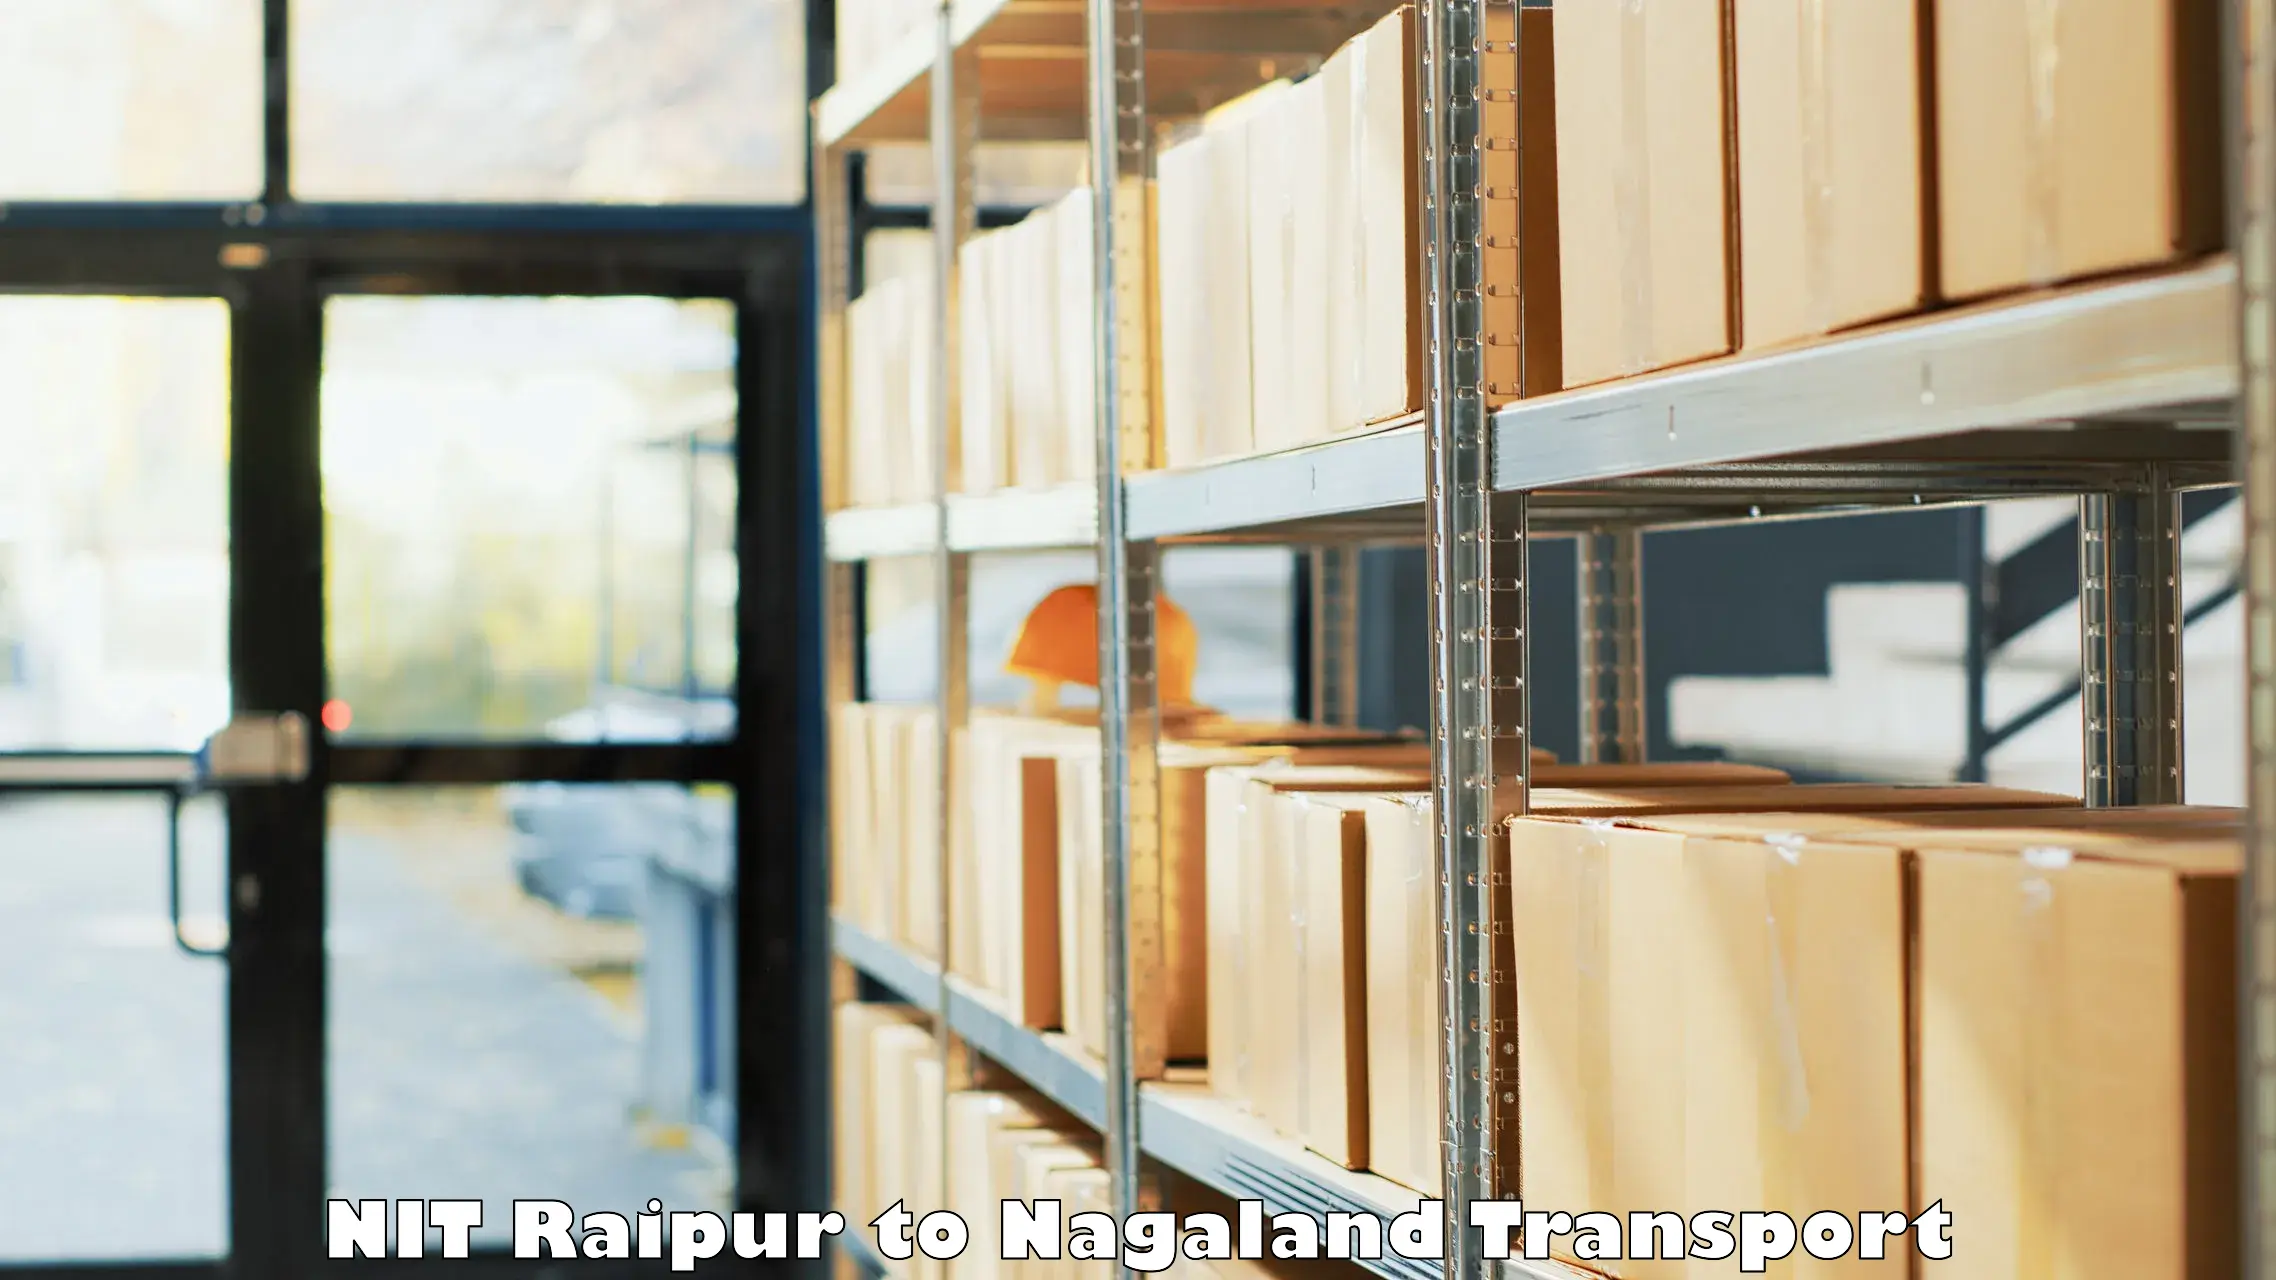 Shipping partner NIT Raipur to Longleng